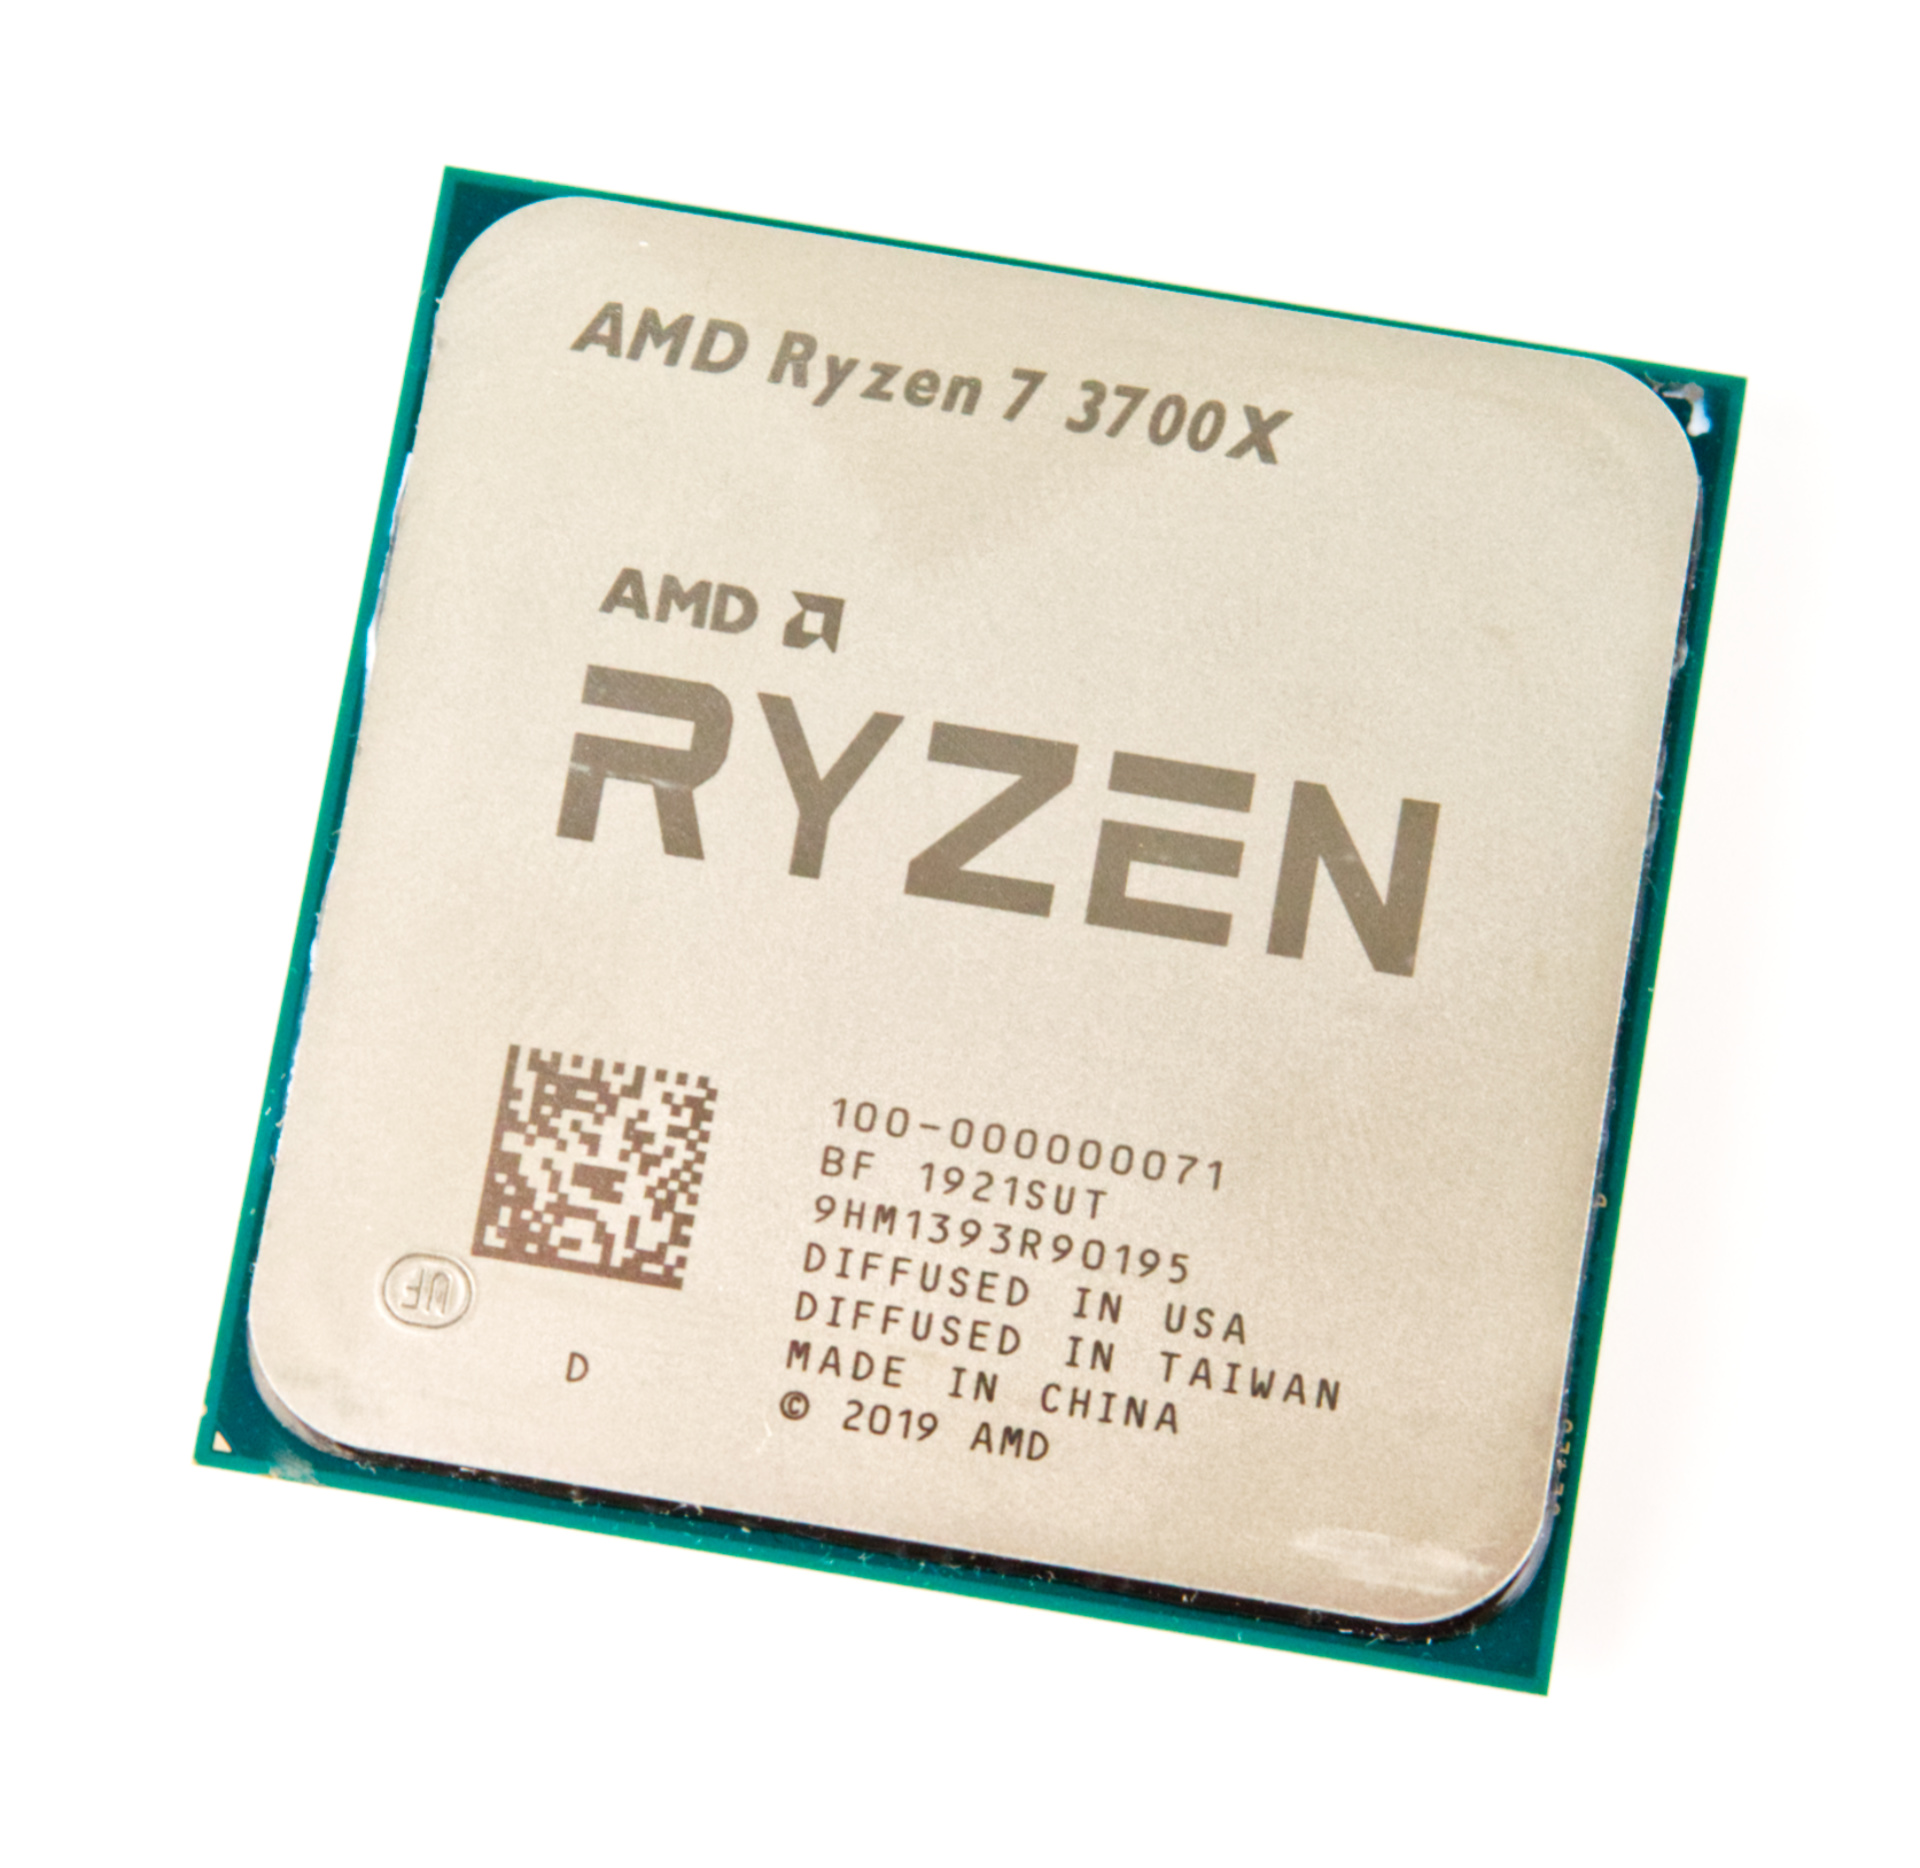 AMD Ryzen 5 7520C vs AMD Ryzen 7 3800XT vs AMD Ryzen 7 3700X